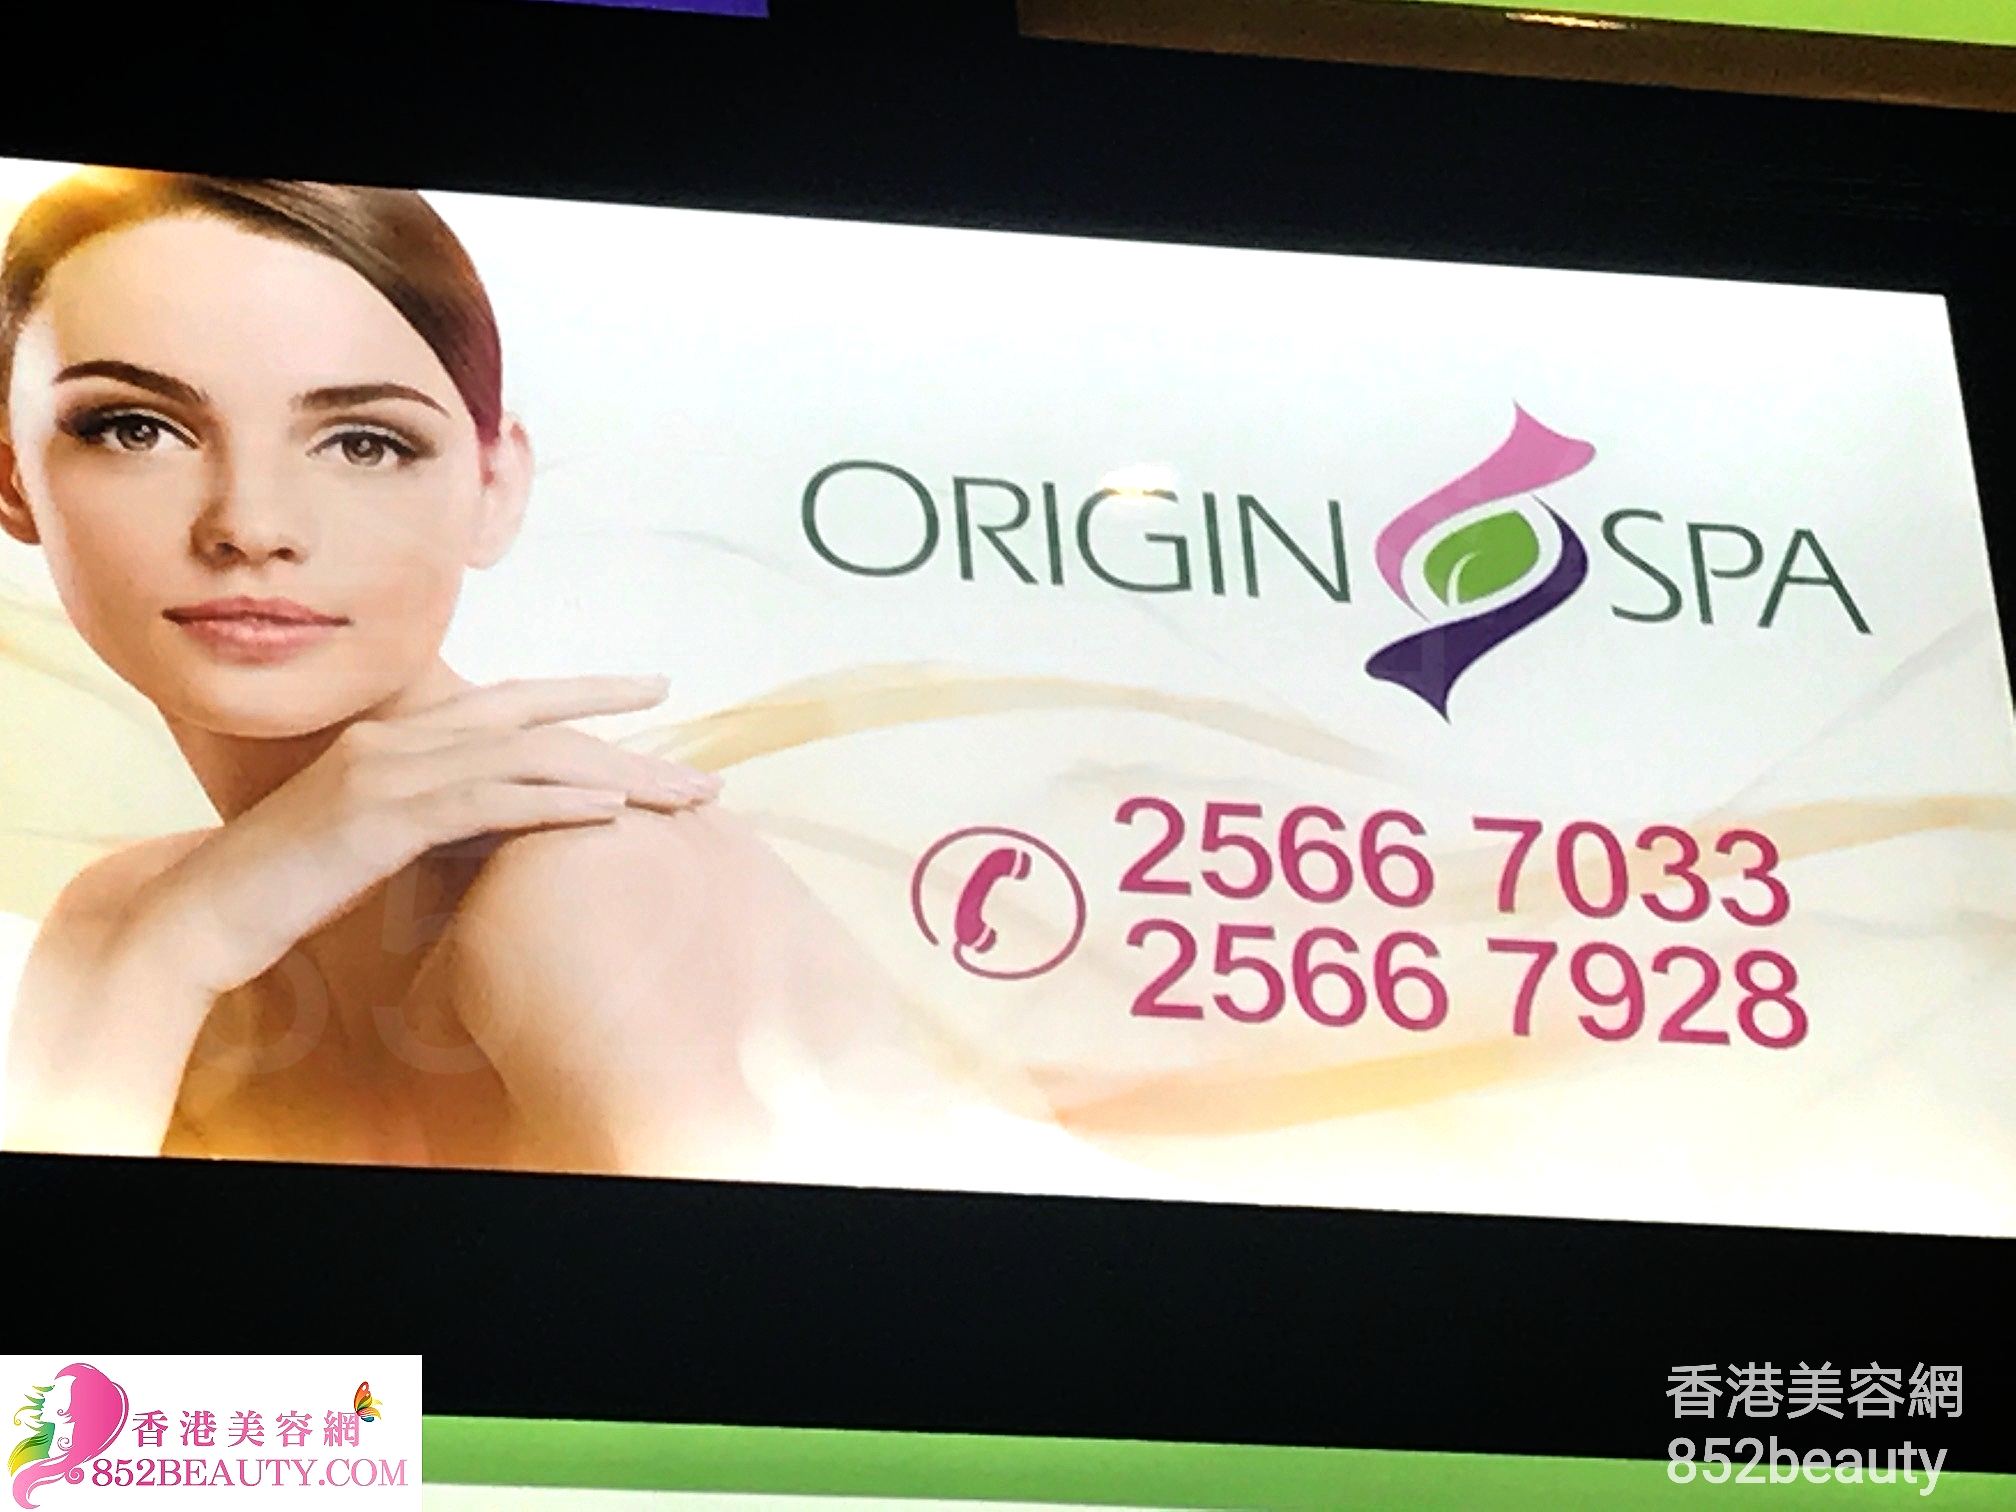 香港美容网 Hong Kong Beauty Salon 用户: 